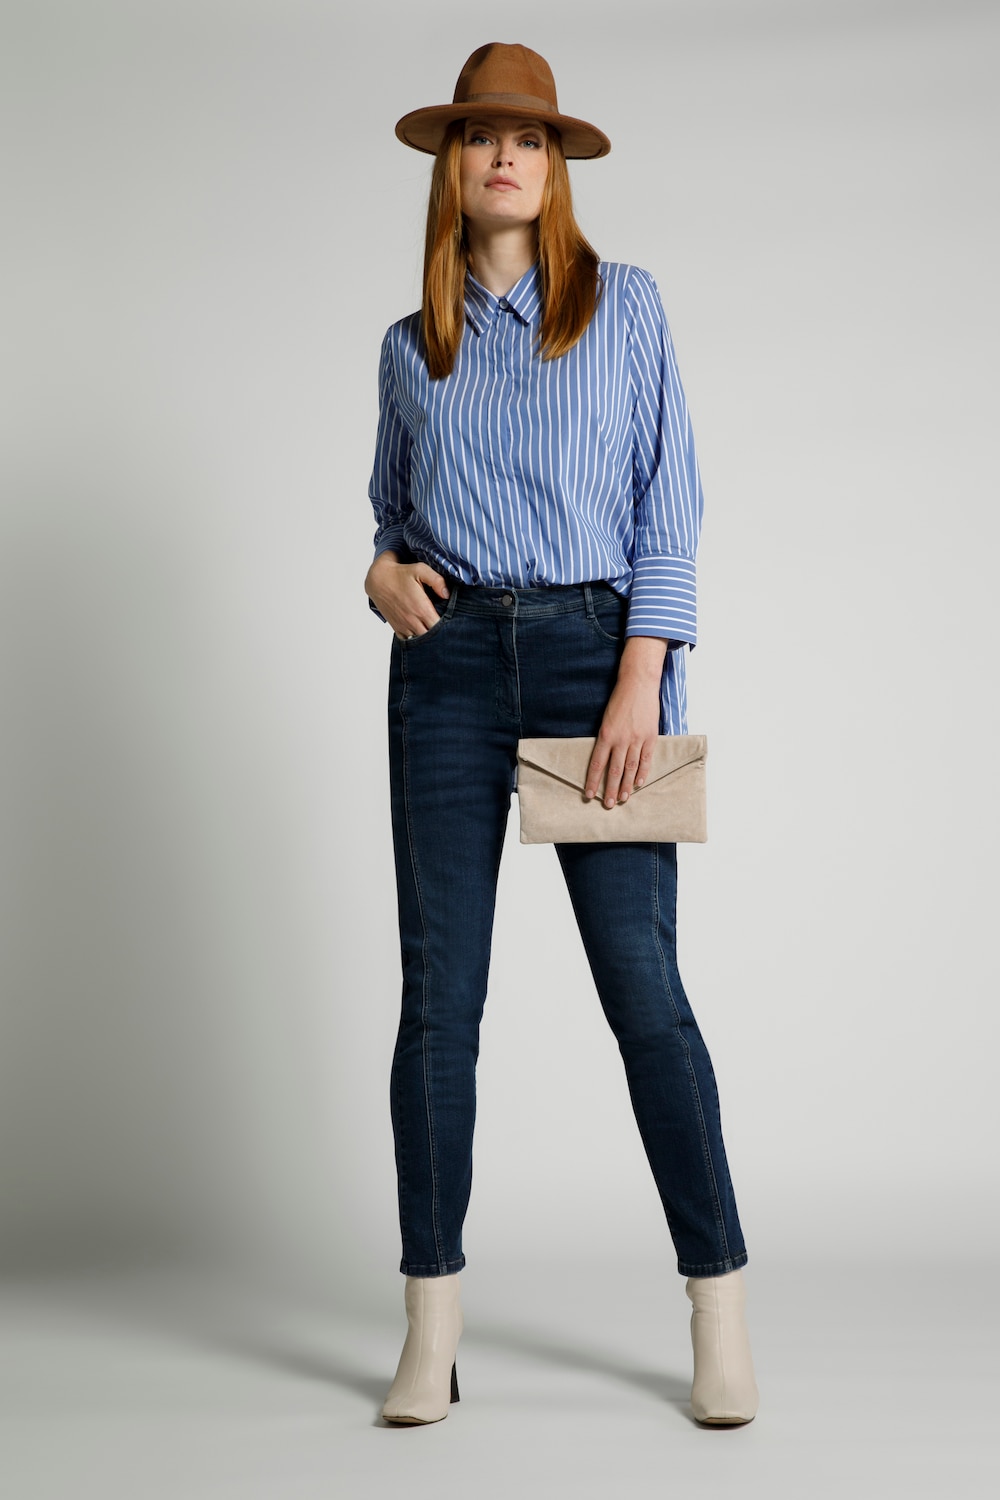 Grote Maten jeans Sienna, Dames, blauw, Maat: 52, Katoen/Synthetische vezels, Ulla Popken